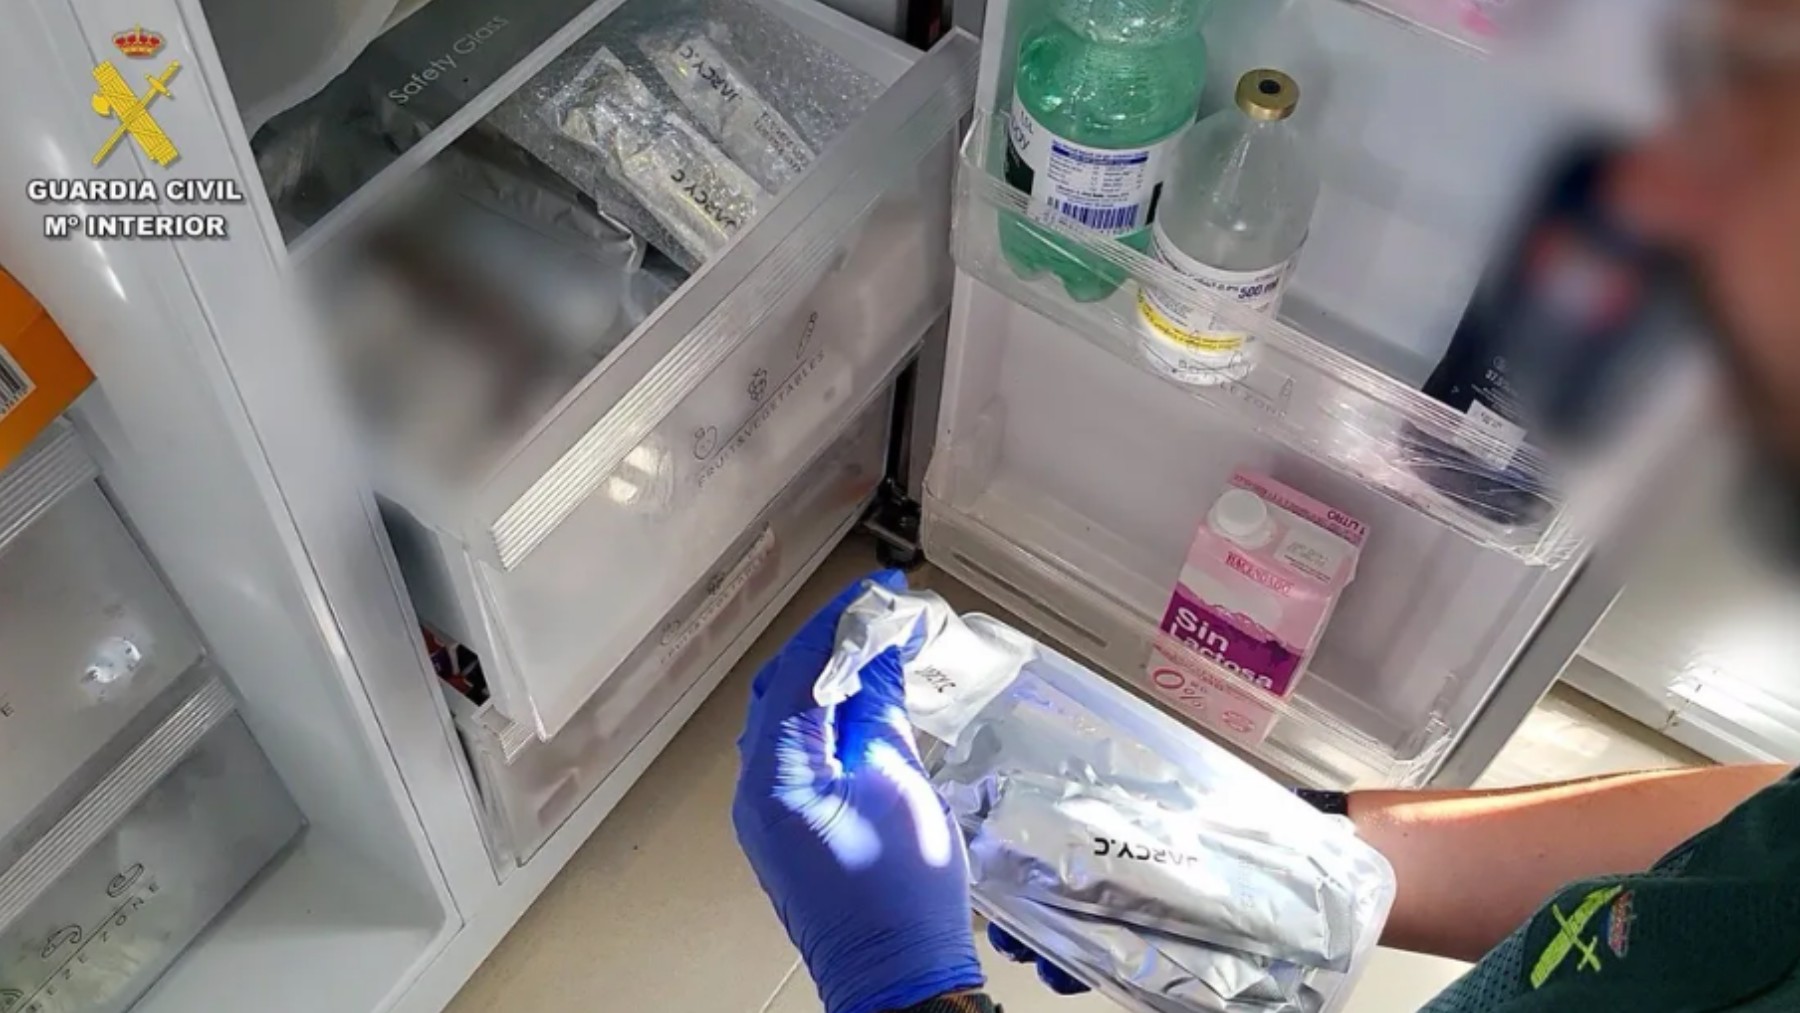 La detenida guardaba la medicación guardada en el frigorífico junto a la comida.